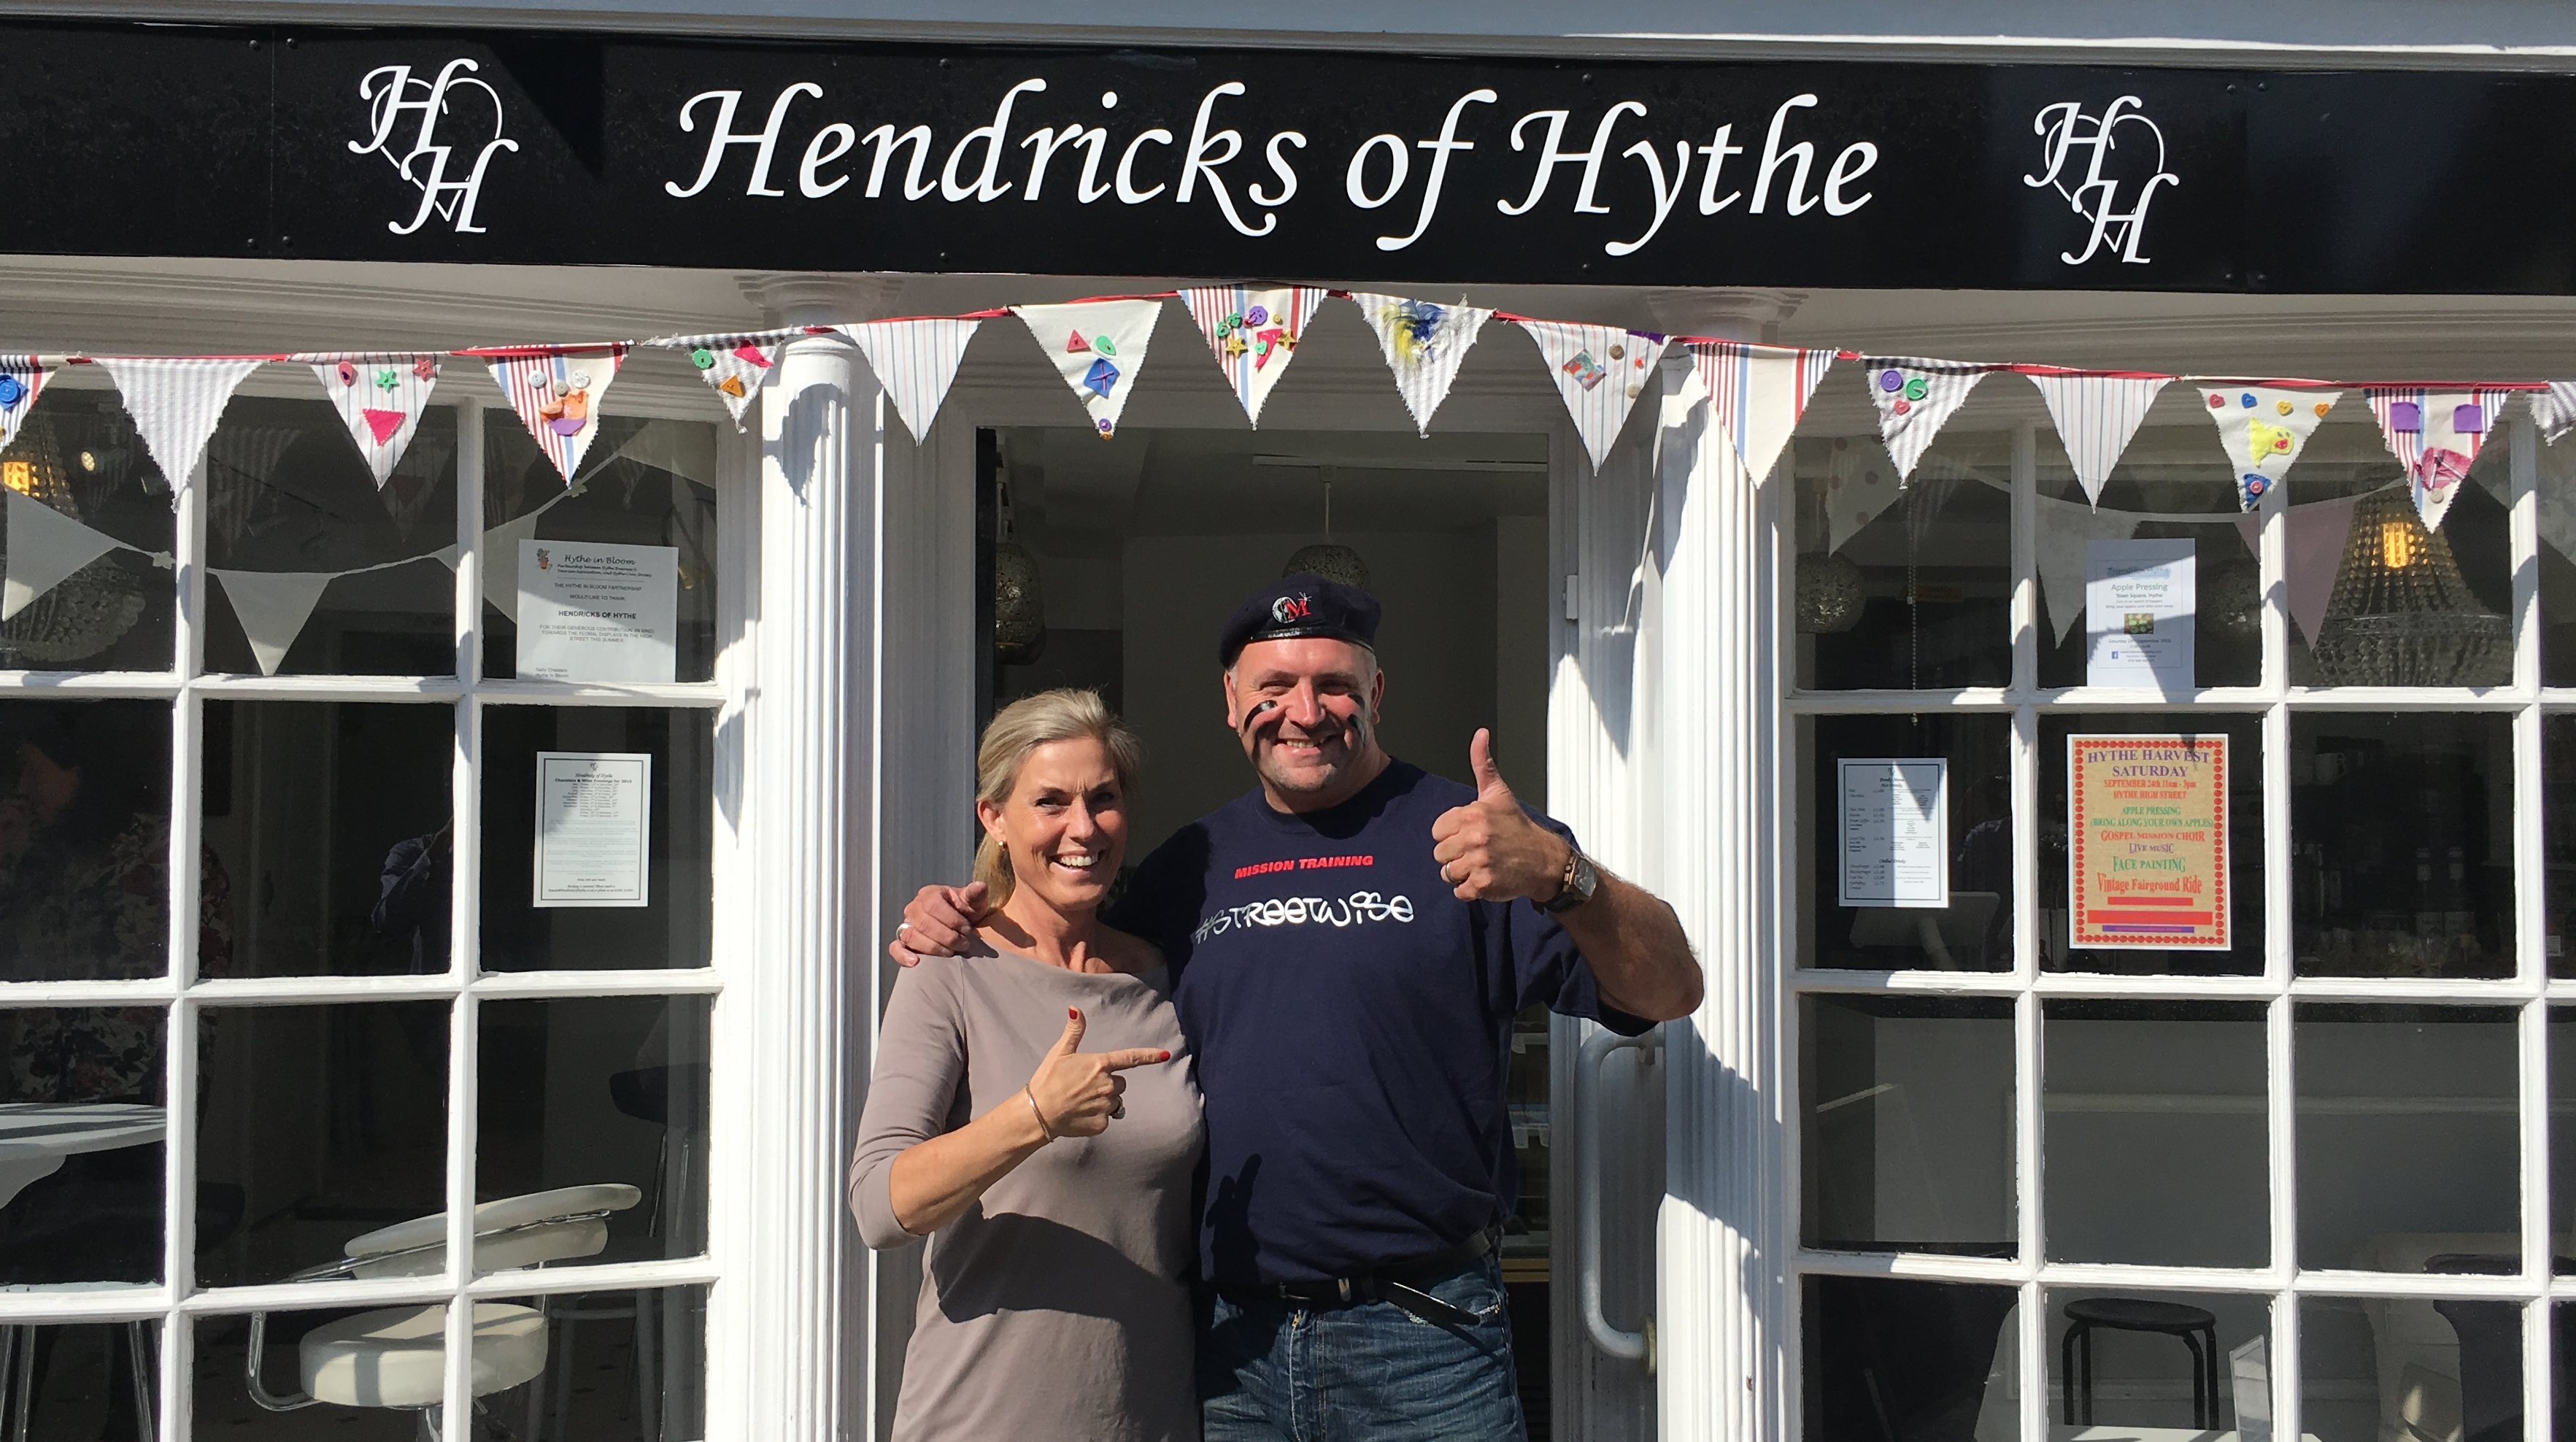 September 2016 - Maximus visited Hendricks of Hythe